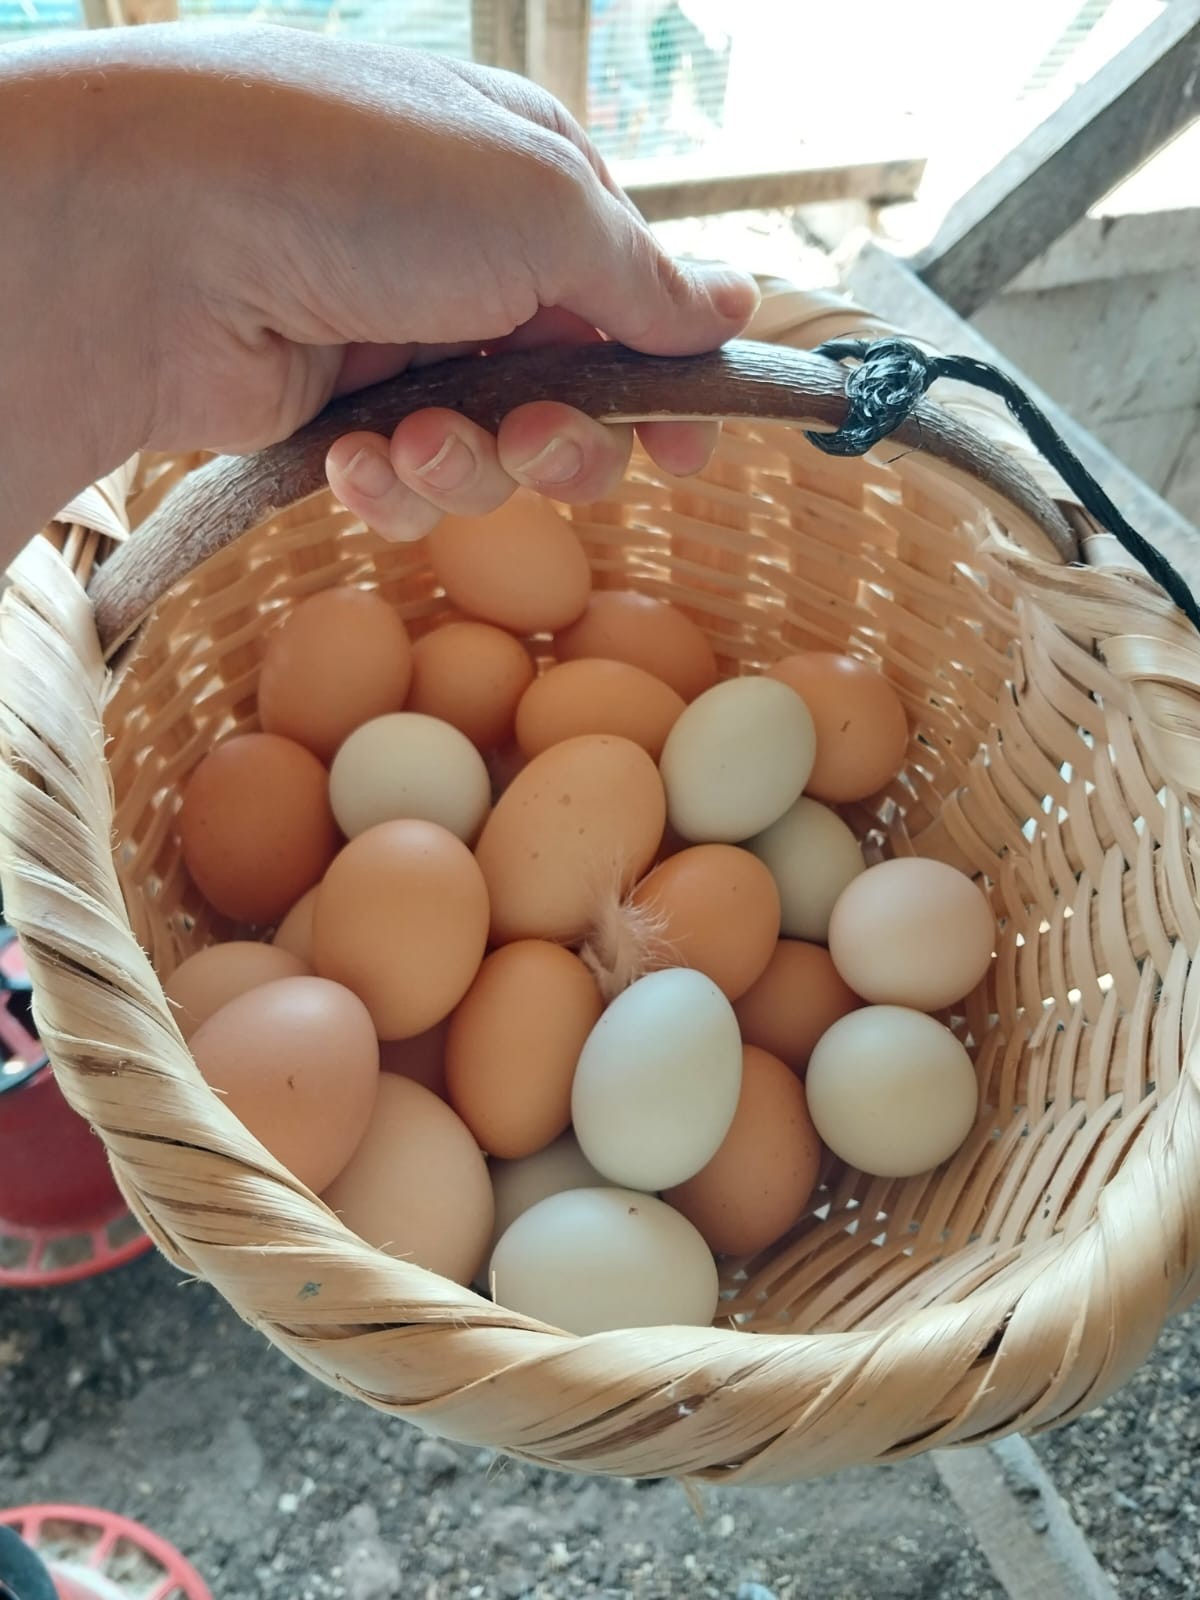 (Şehirlerarası) Doğal Yemle Beslenen Gezen Tavuk Yumurtası (Köy Yumurtası)